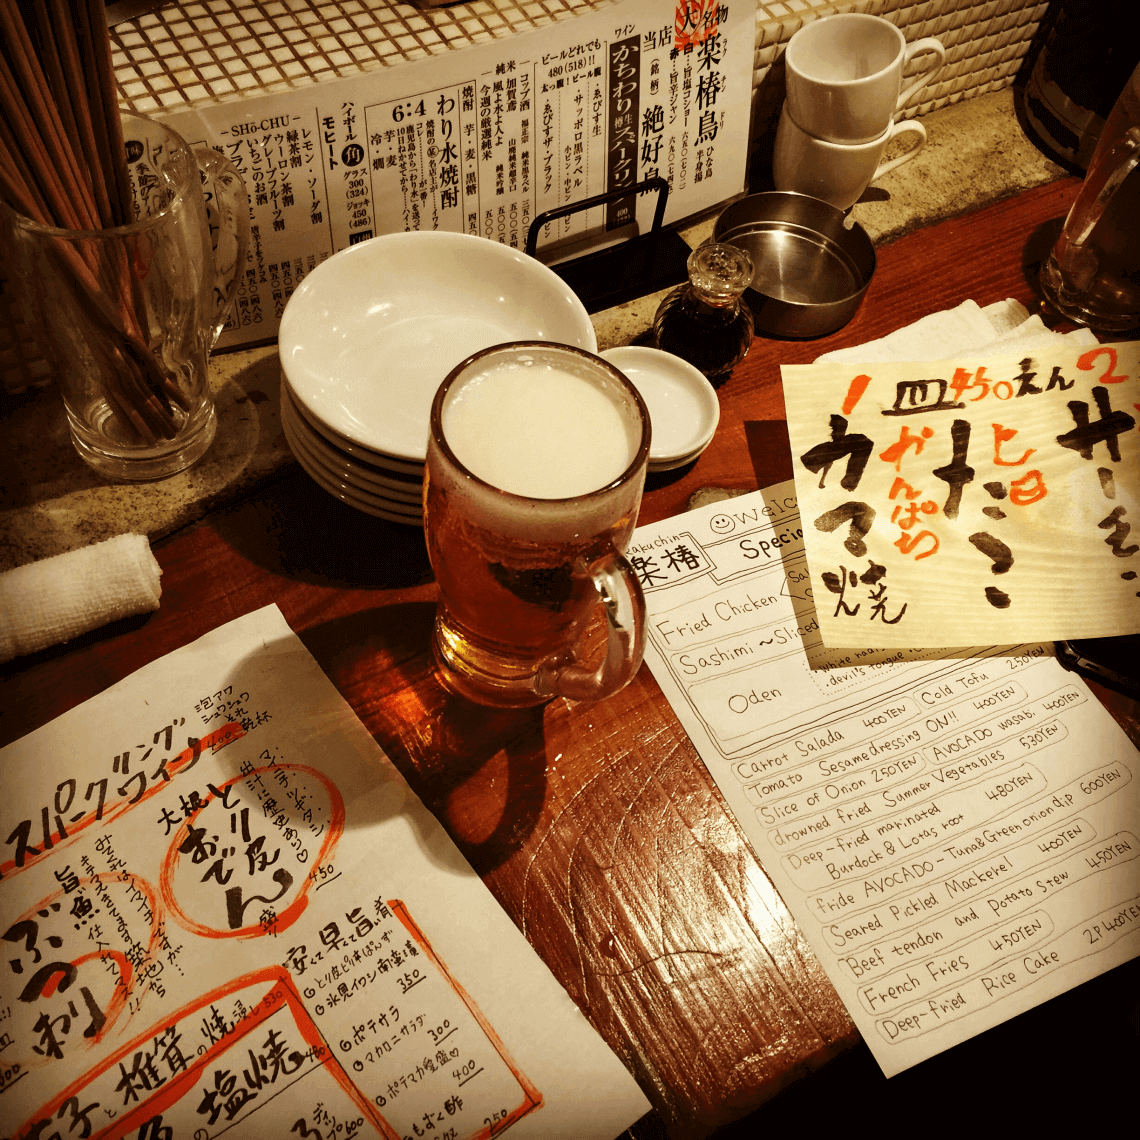 日本东京涩谷居酒屋的菜单